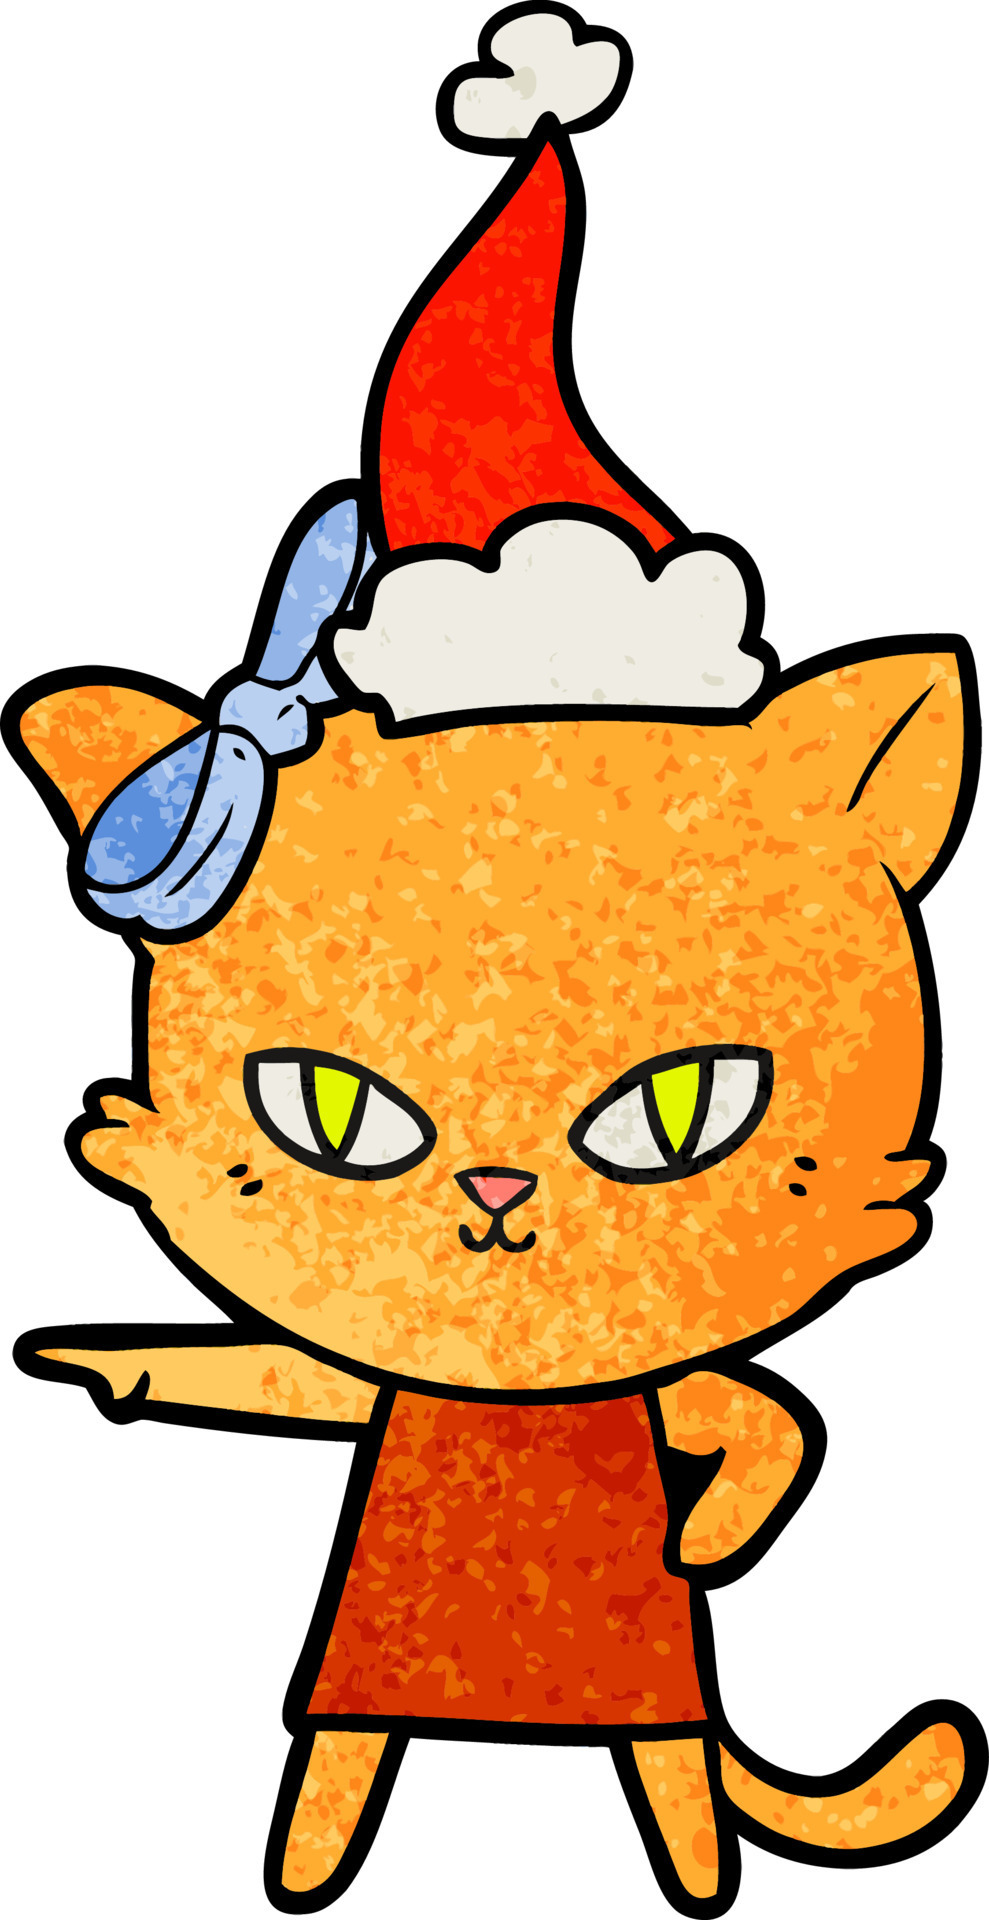 Um gato de desenho animado com um vestido laranja e um chapéu que diz o  nome do gato.